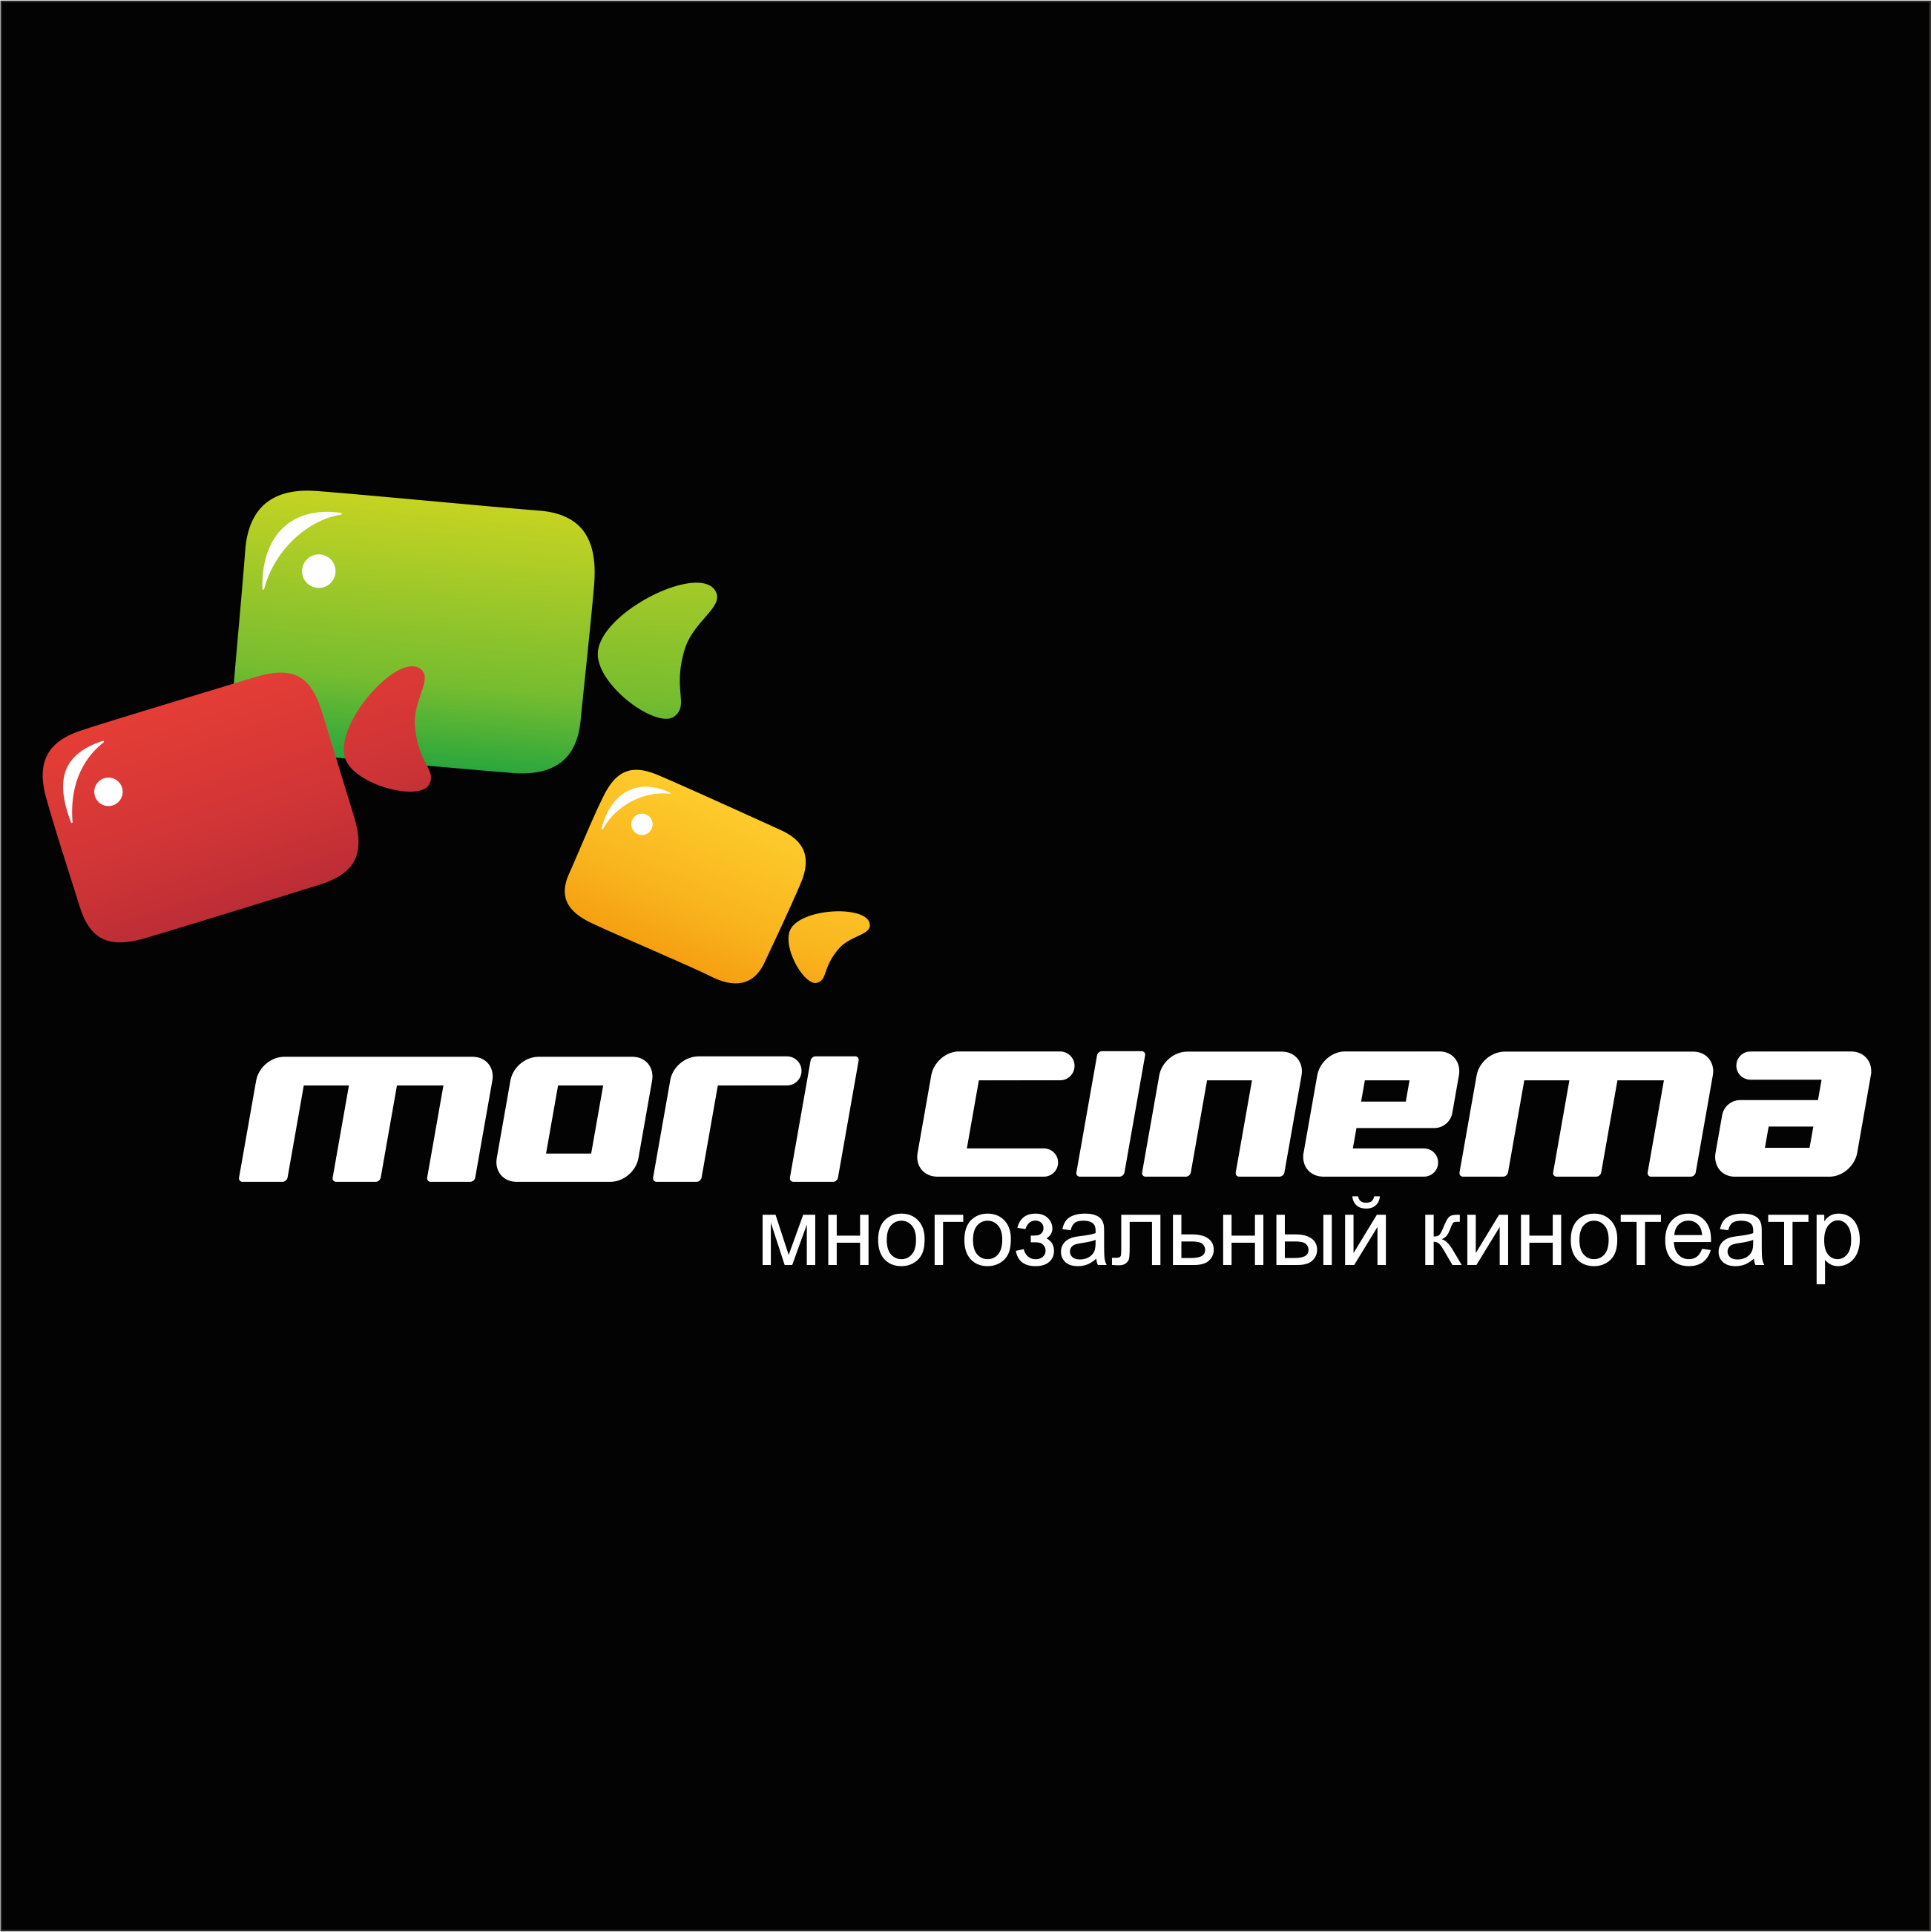 Мори синема череповец купить. Мори Синема. Кинотеатр Mori Cinema. Мори Синема логотип. Логотип кинотеатра.